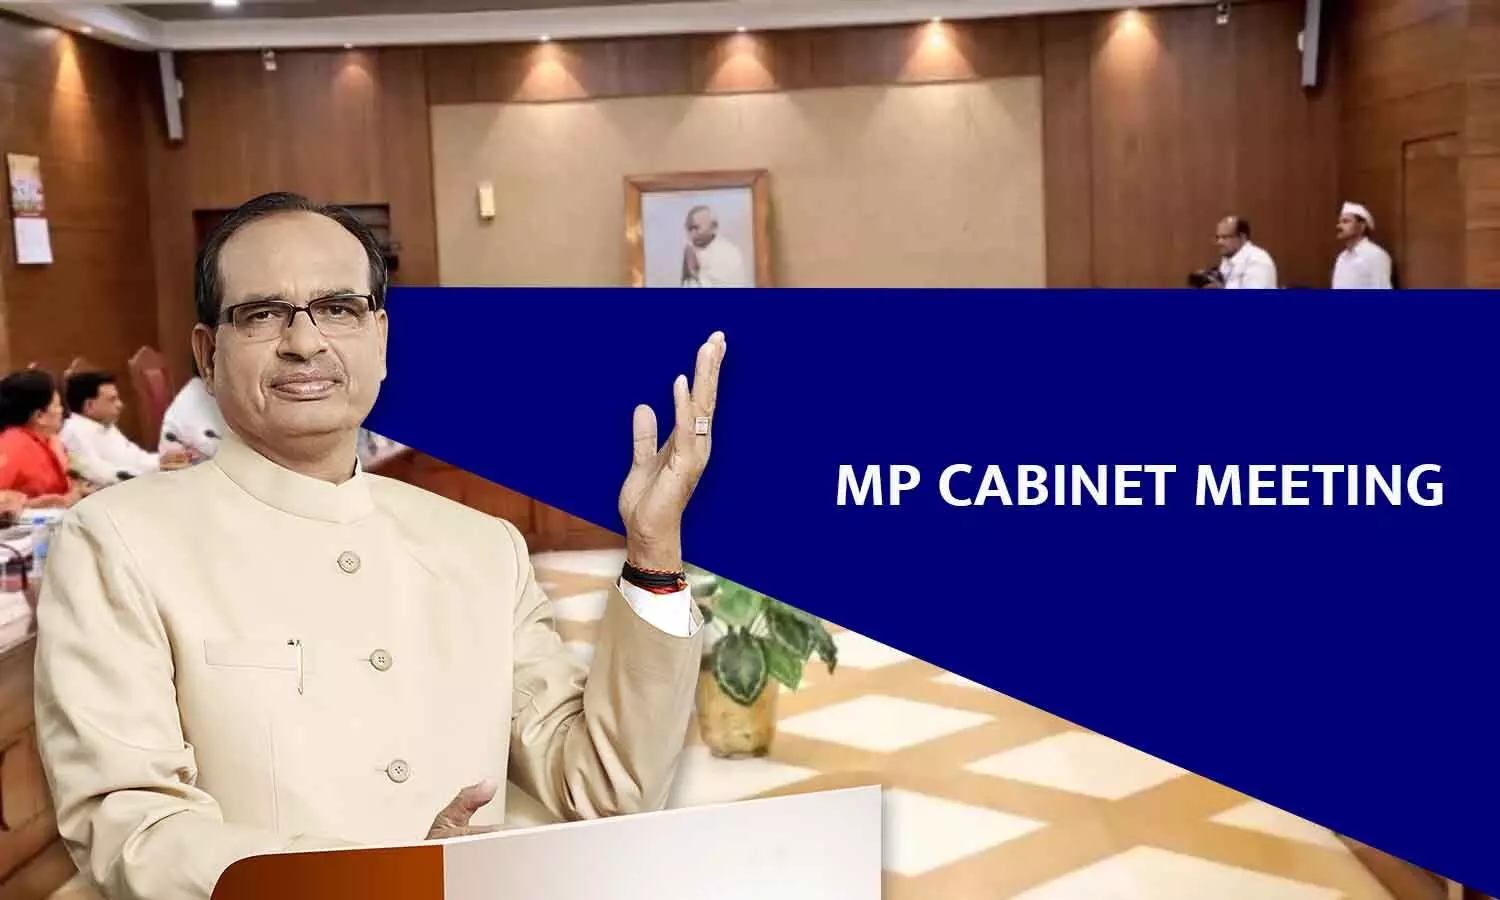 MP Cabinet Meeting: शासकीय कर्मचारियों को चतुर्थ समयमान वेतनमान की स्वीकृति समेत मंत्री-परिषद ने लिए ख़ास निर्णय, पढ़ें